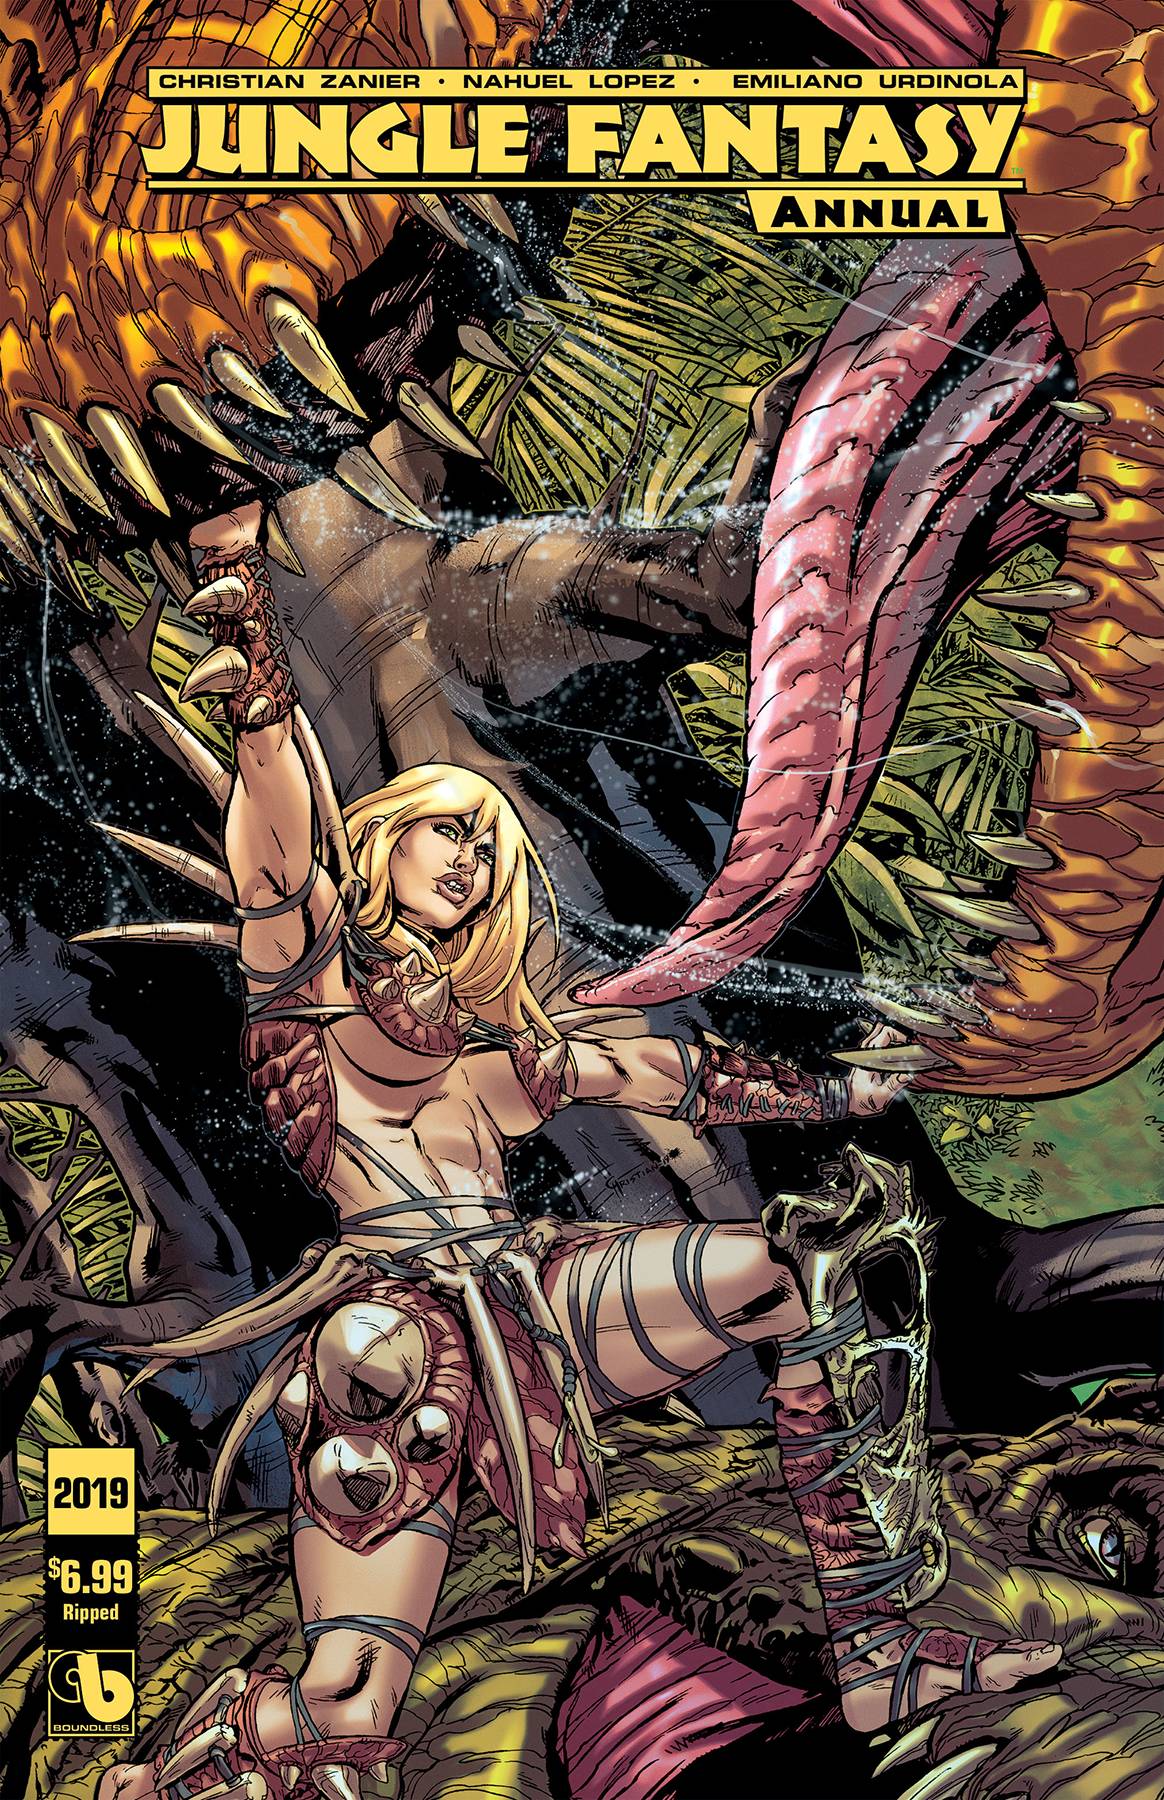 Jungle fantasy comics